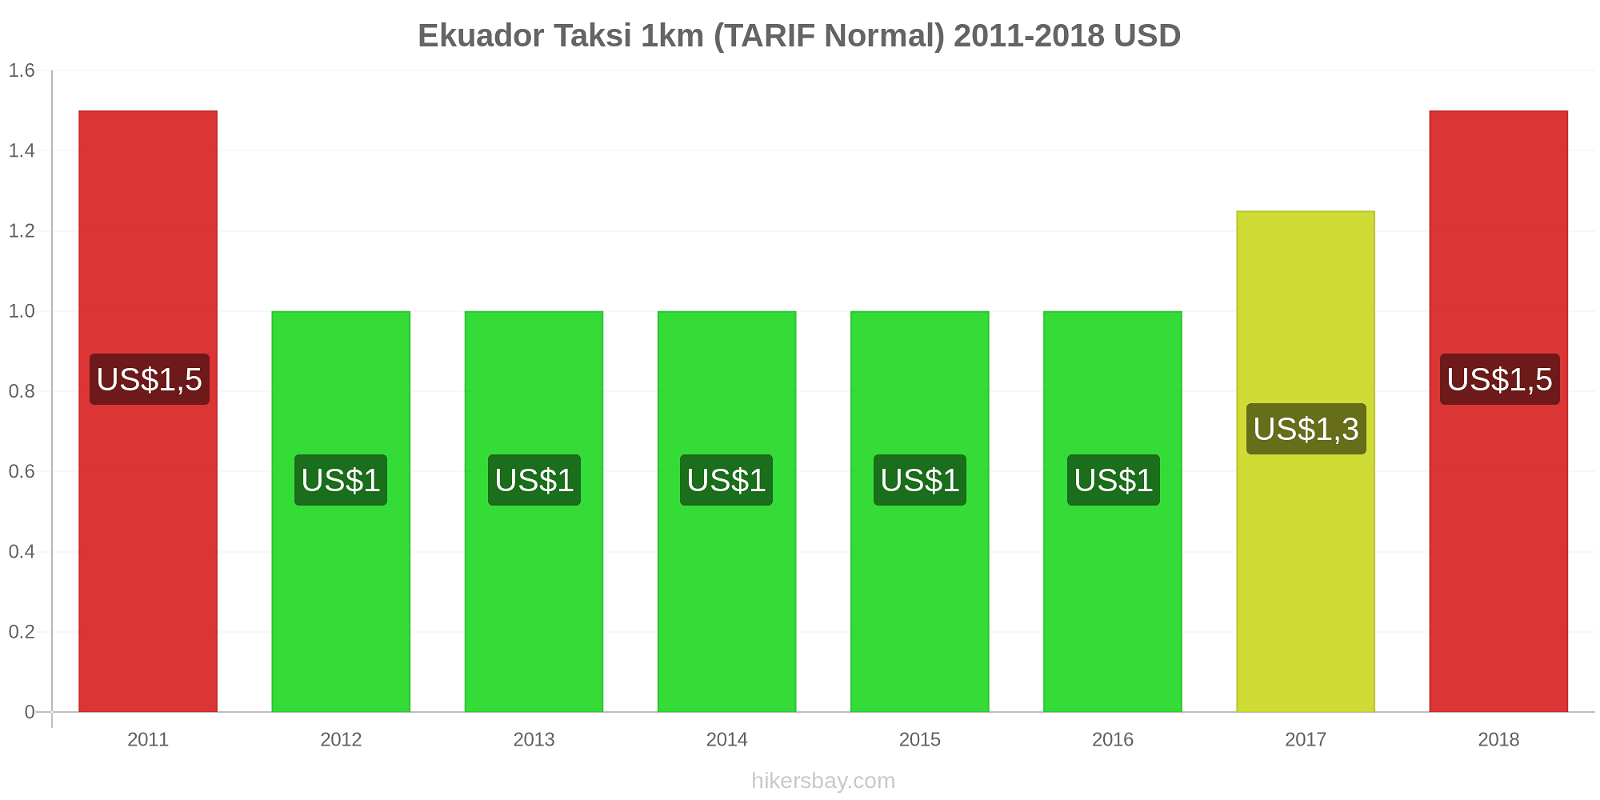 Ekuador perubahan harga Taksi 1km (Tarif Normal) hikersbay.com